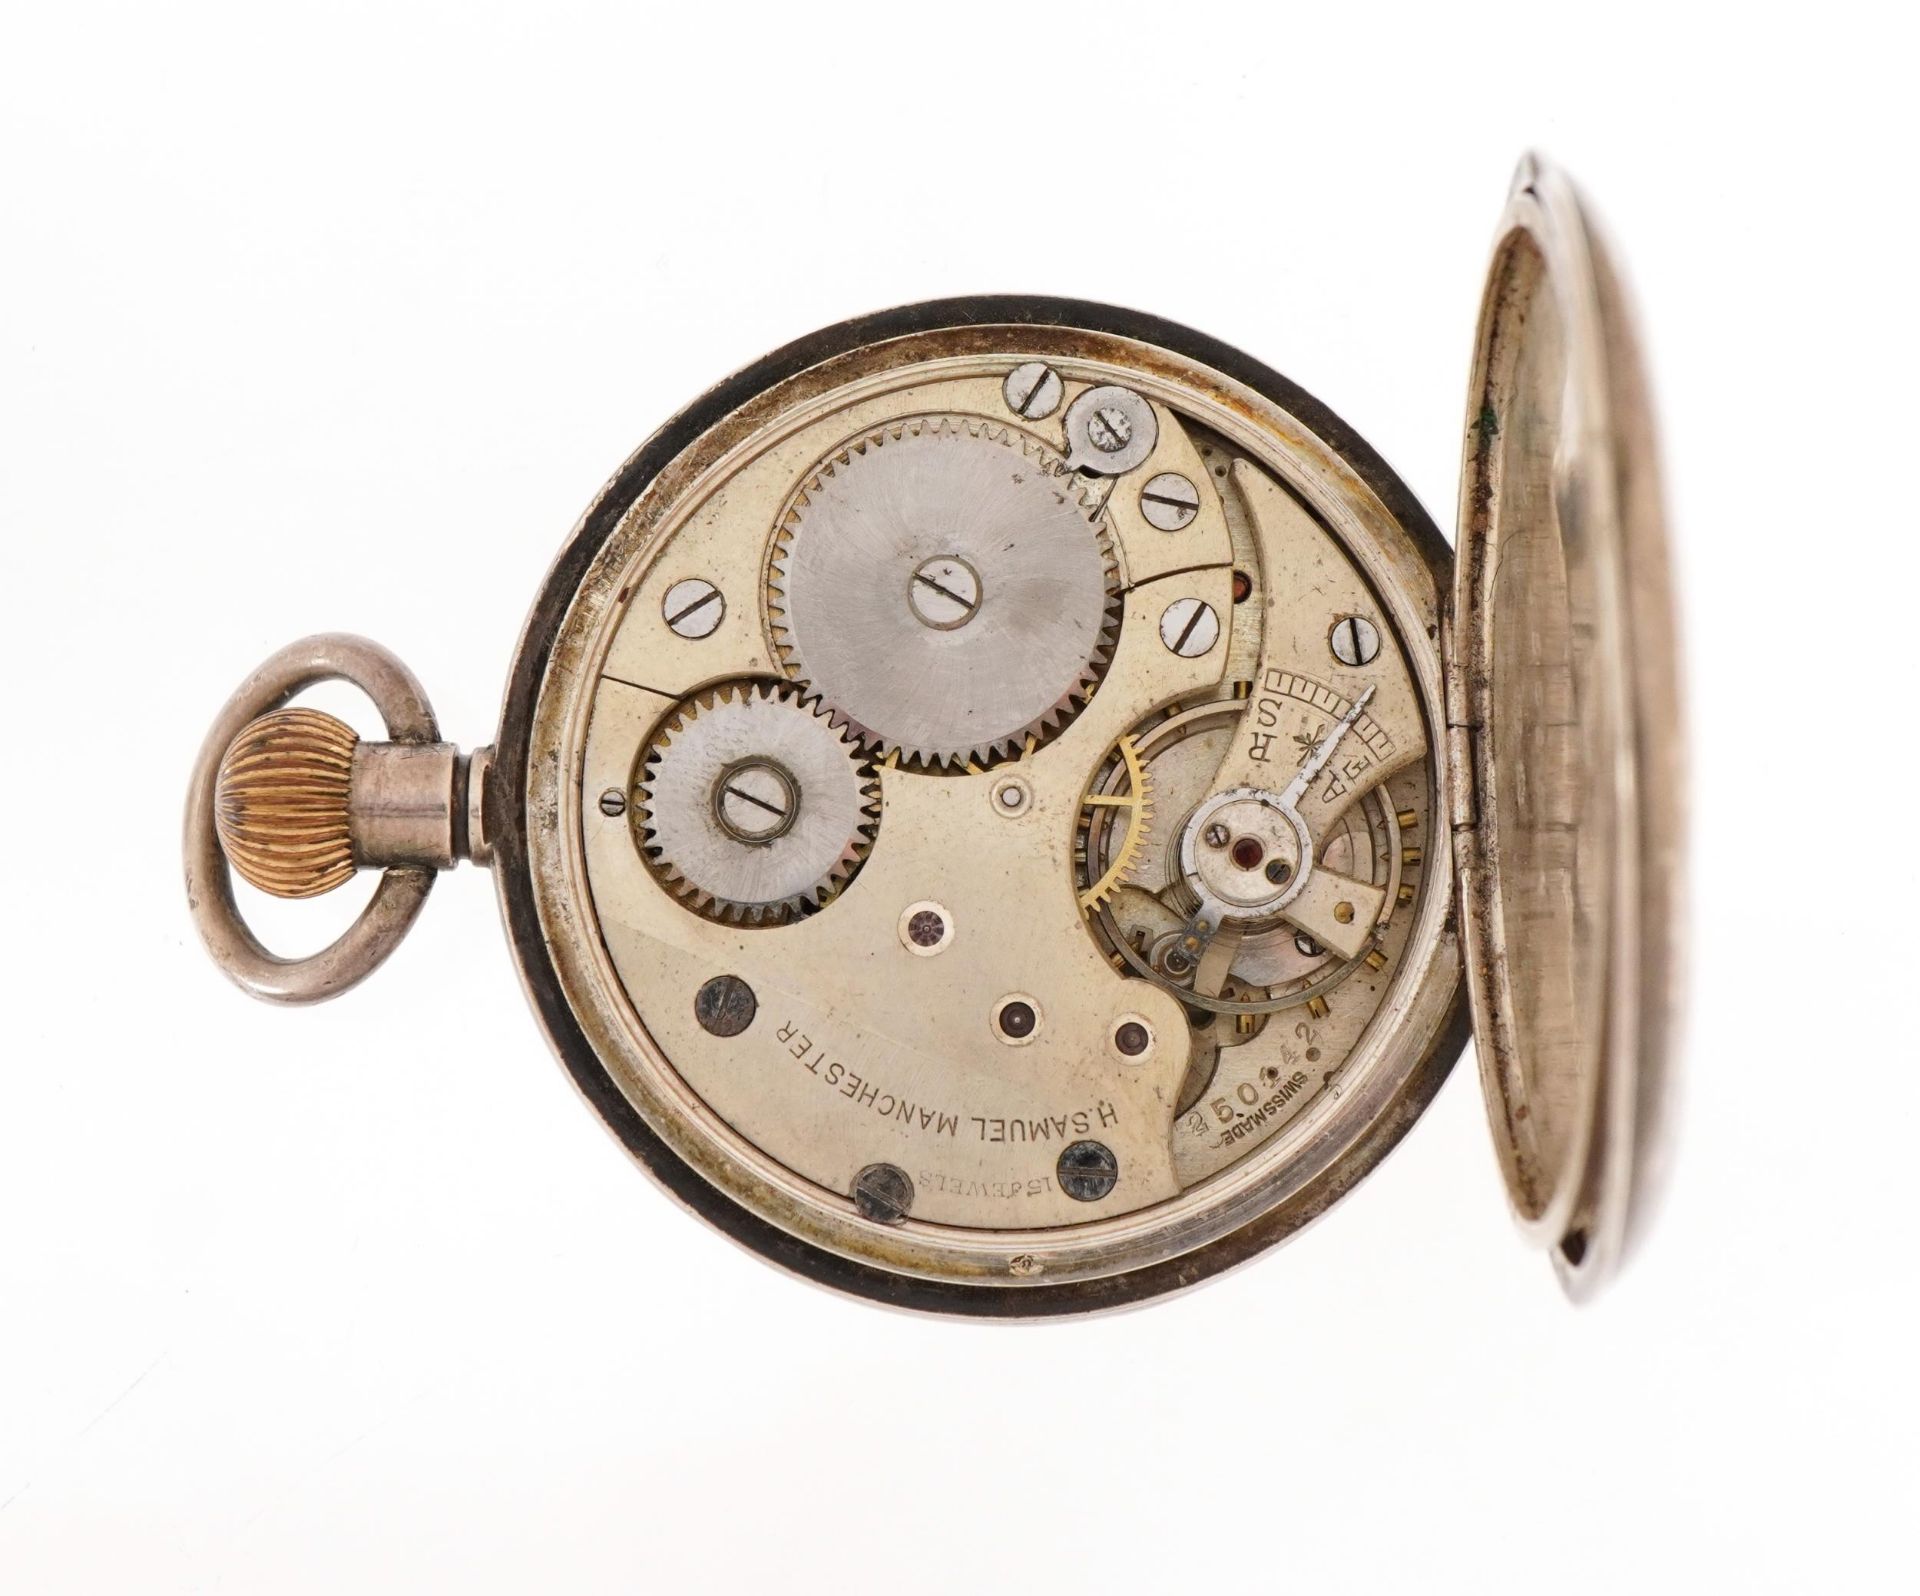 H Samuel, gentlemen's silver half hunter pocket watch, the case numbered 569654, London import - Bild 4 aus 6